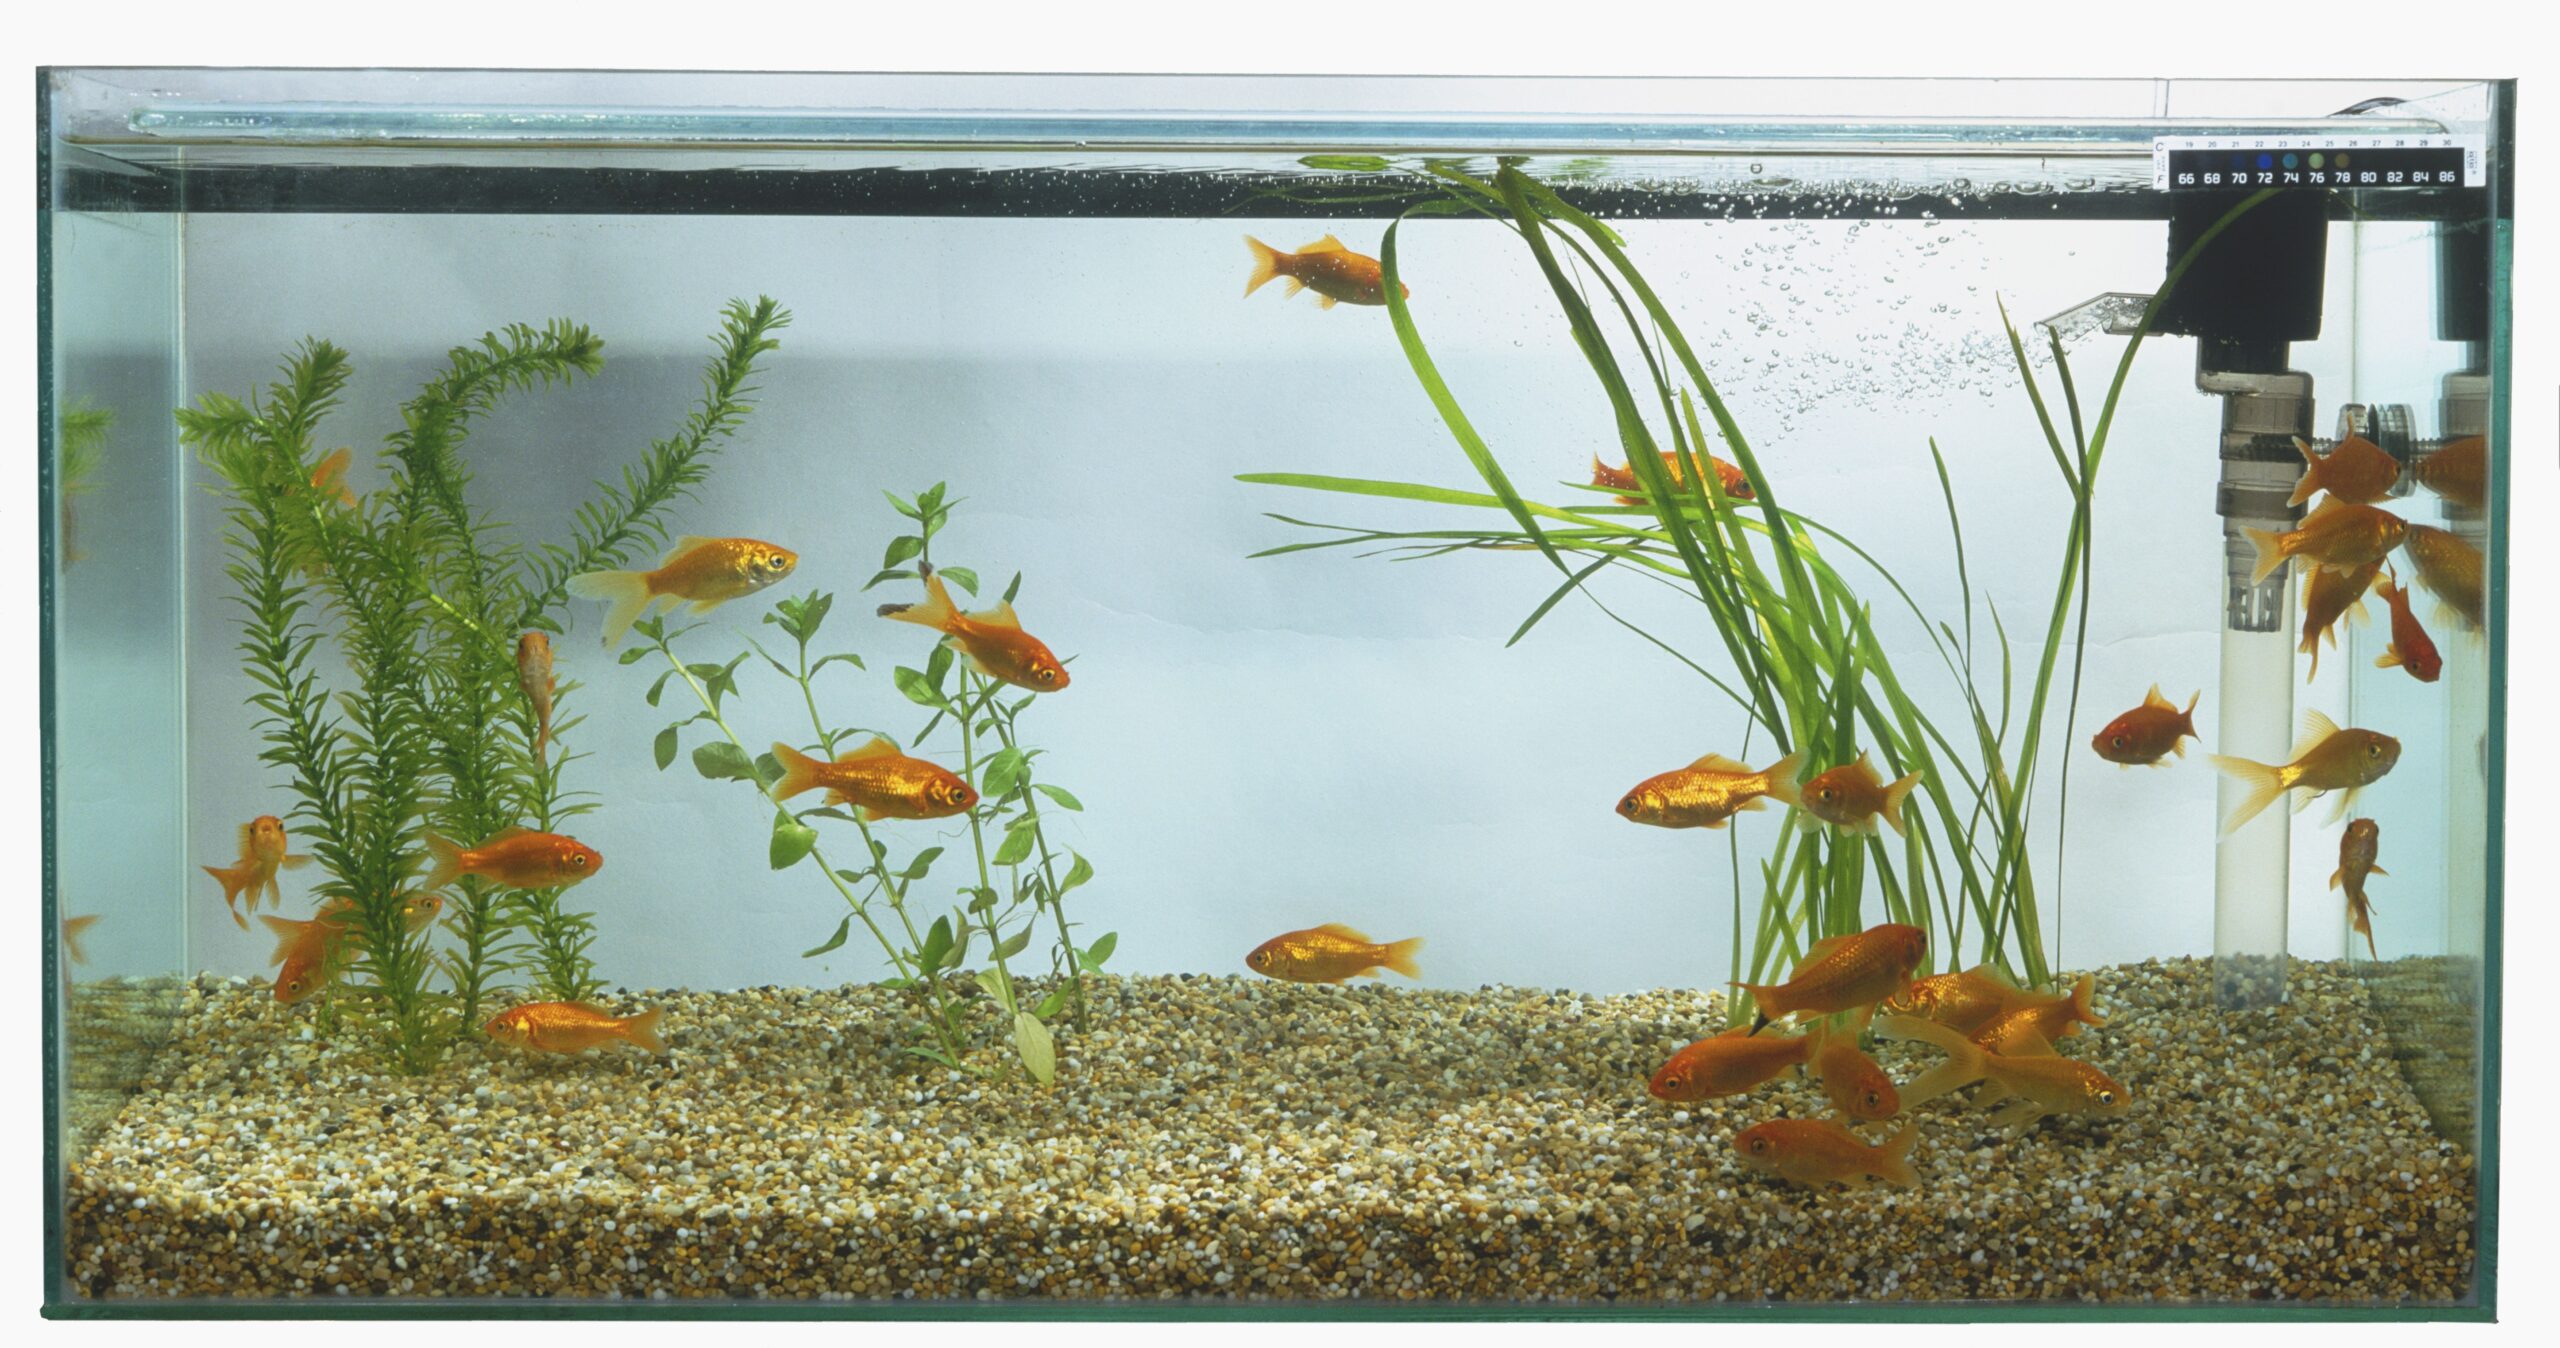 https://aquariumia.com/what-are-the-different-types-of-aquarium-filters-for-fish-tanks/